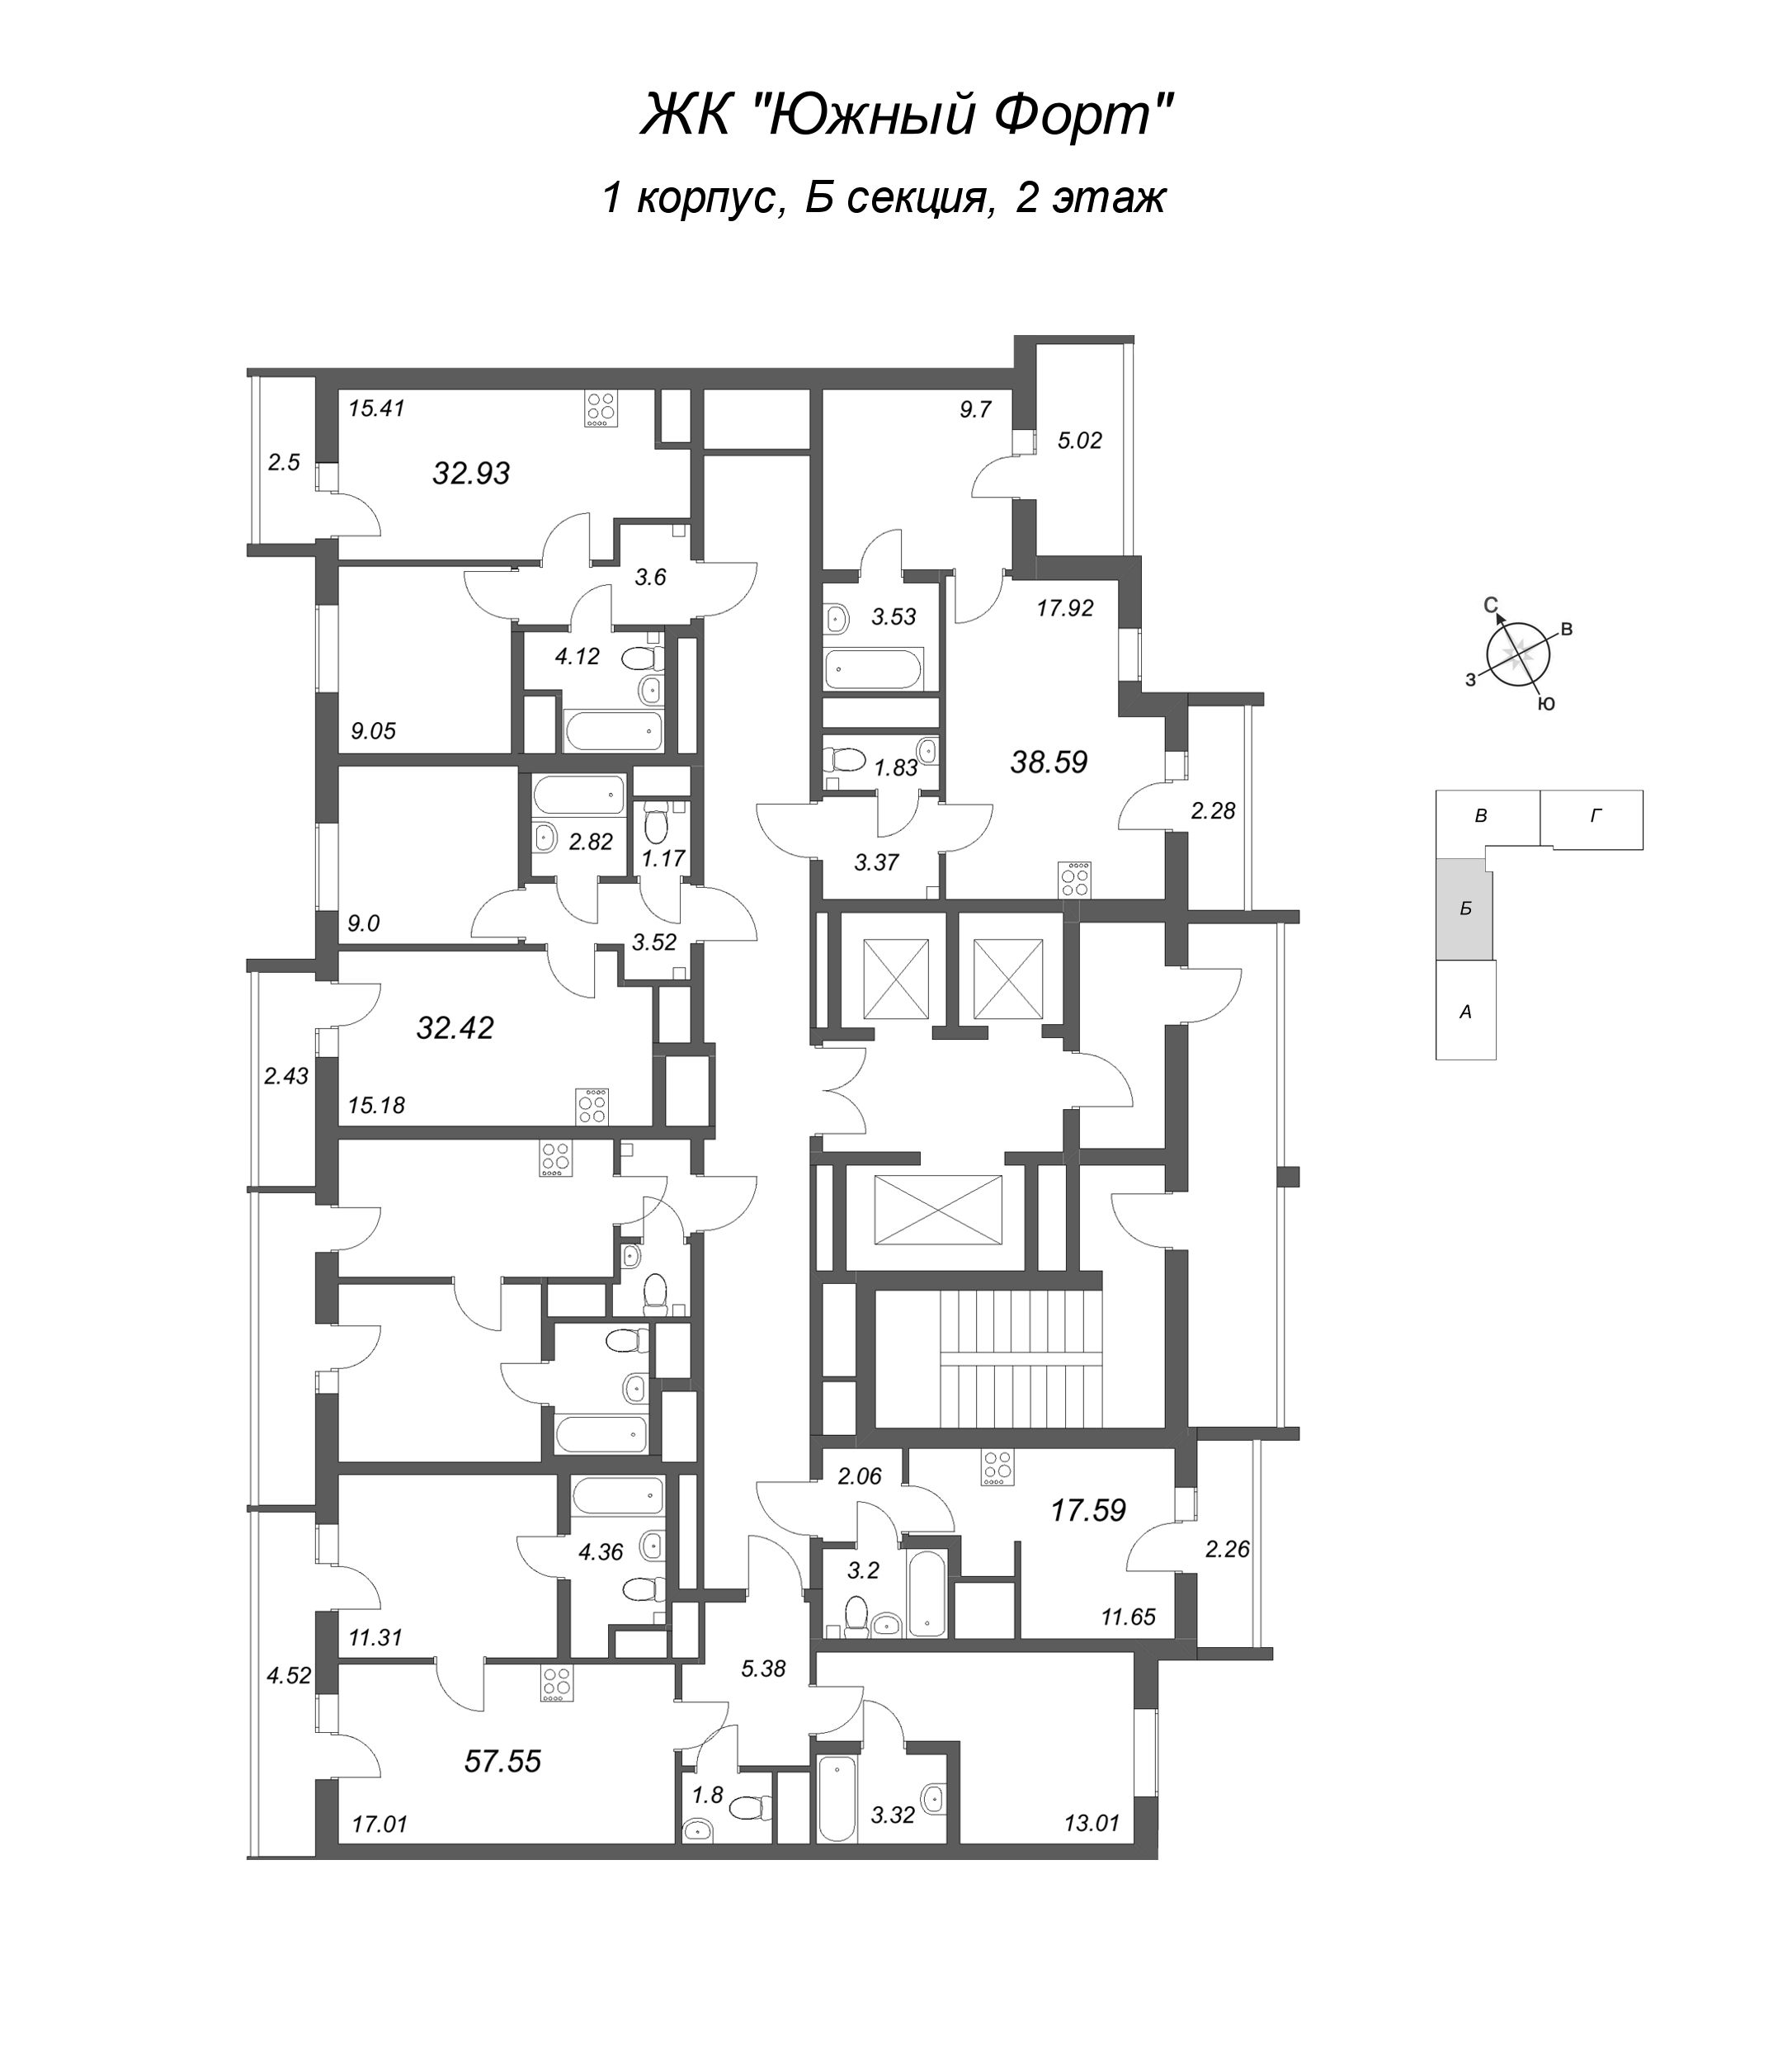 2-комнатная (Евро) квартира, 32.93 м² в ЖК "Южный форт" - планировка этажа